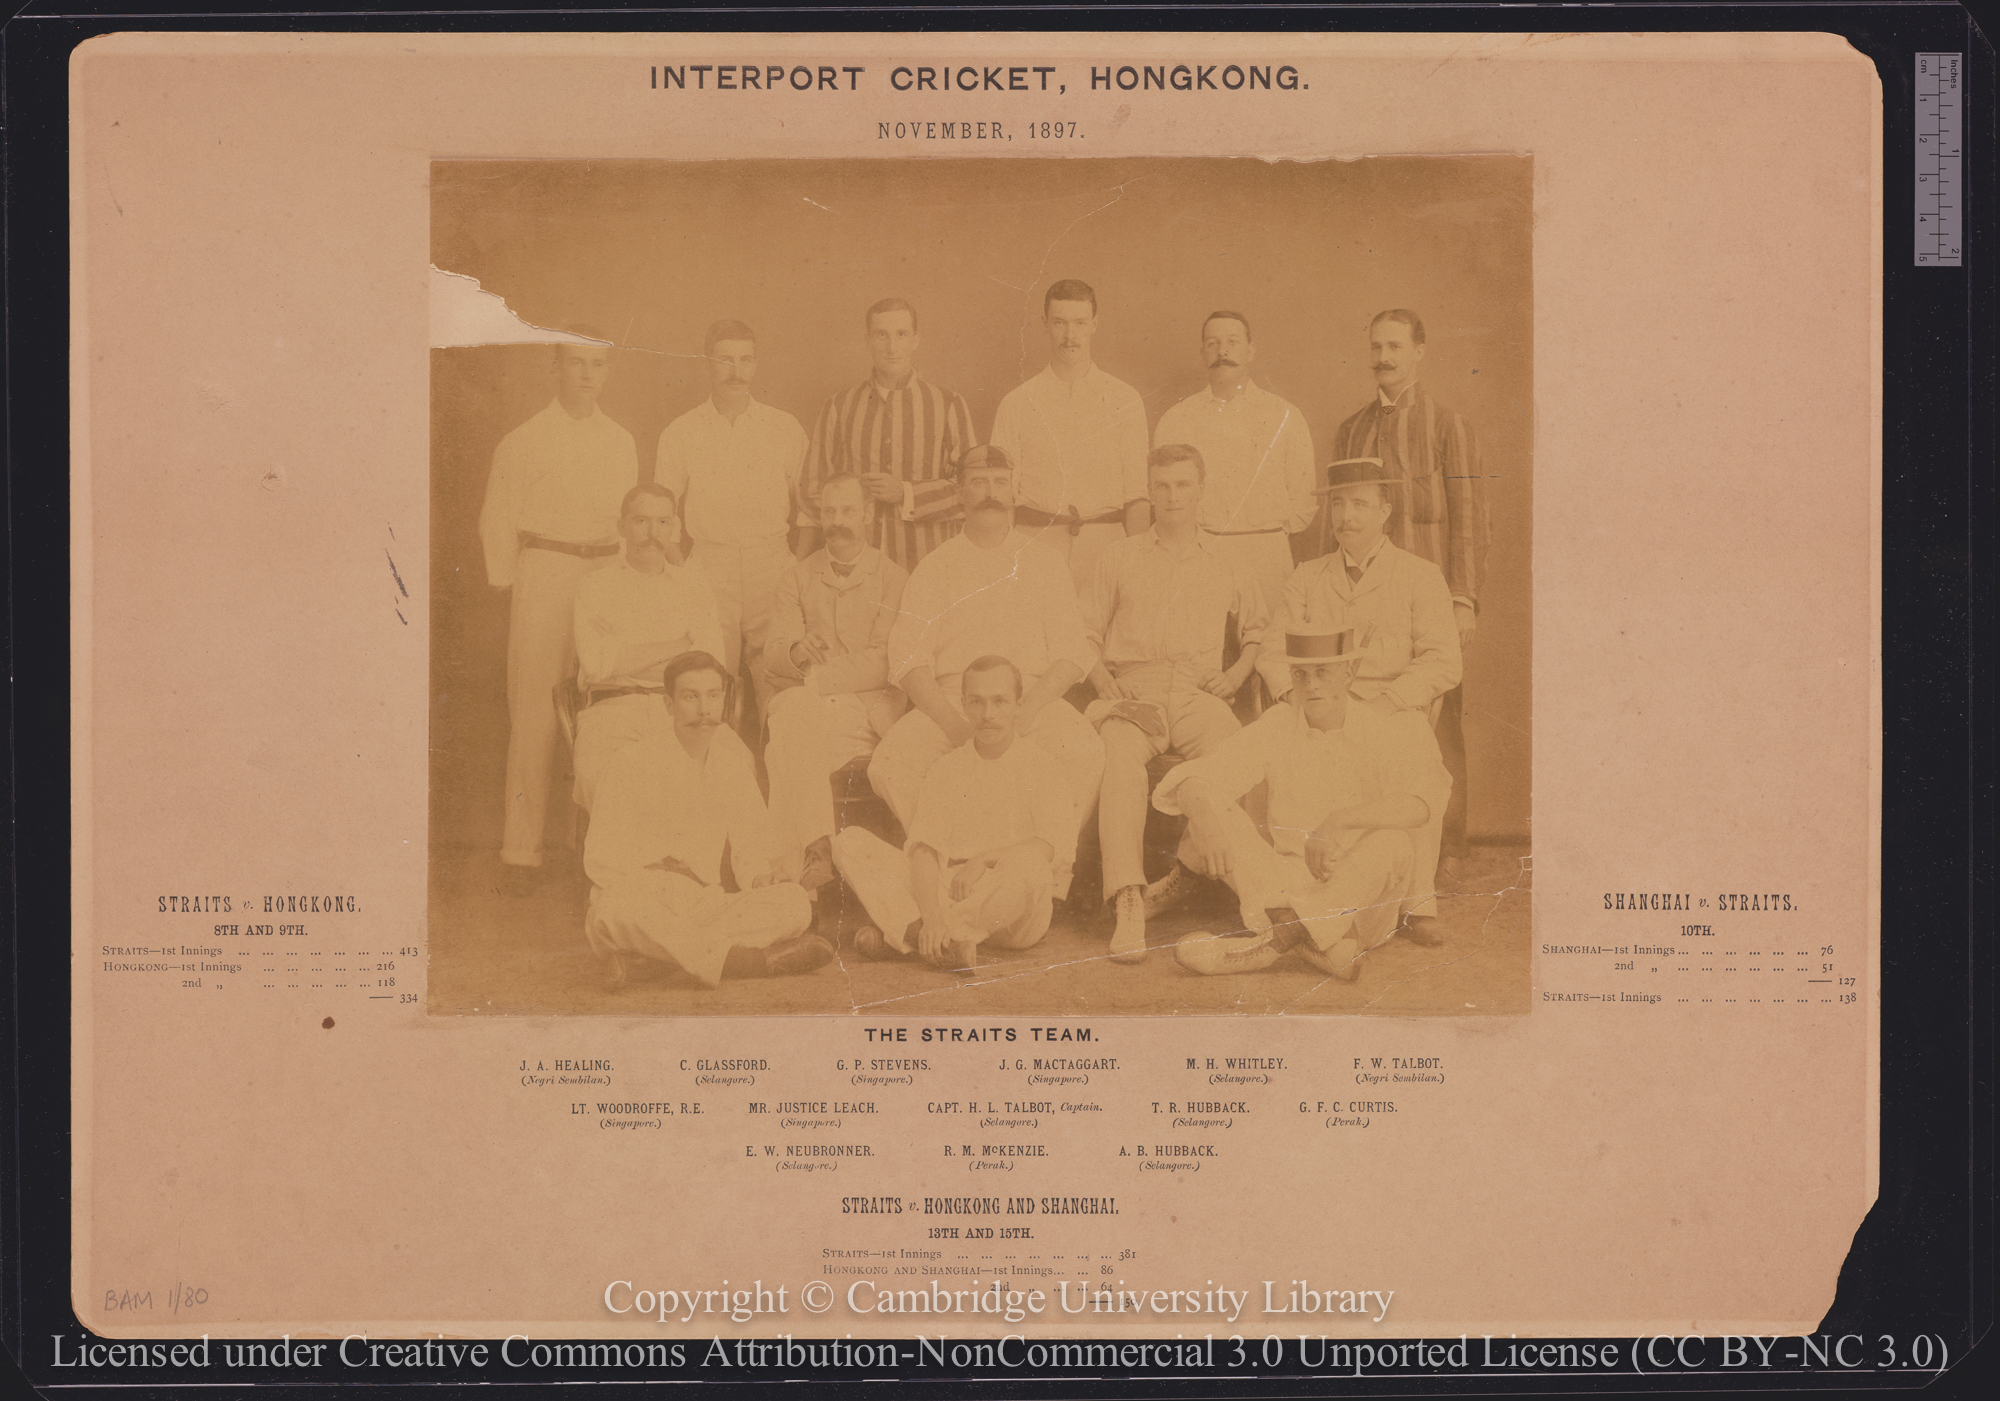 The Straits Team, Interport Cricket, Hong Kong, November, 1897, 1897